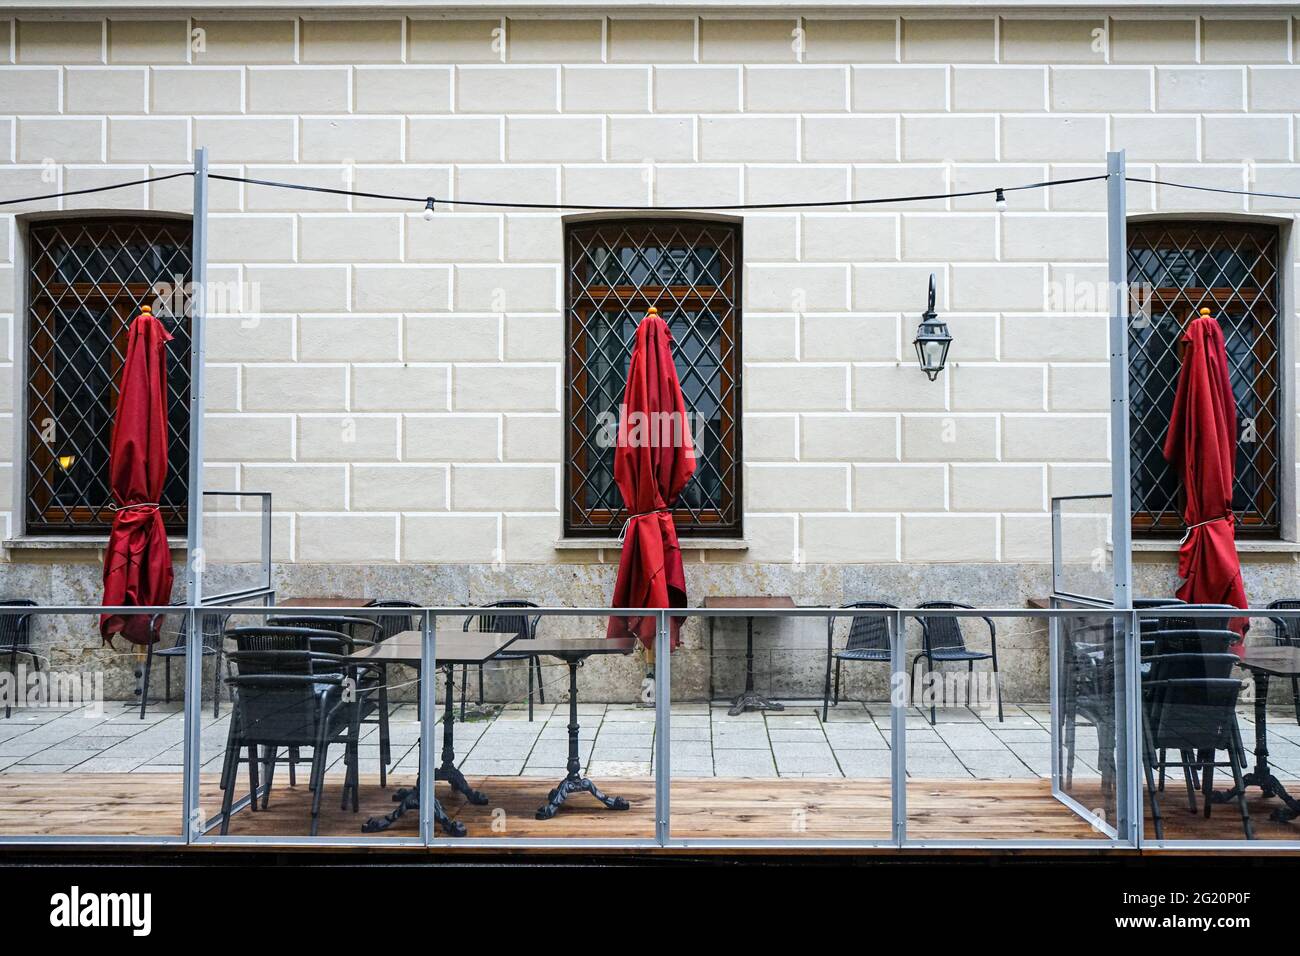 Sillas plegadas y sombrillas plegadas en la zona exterior de un restaurante durante la pandemia de Corona. Foto de stock